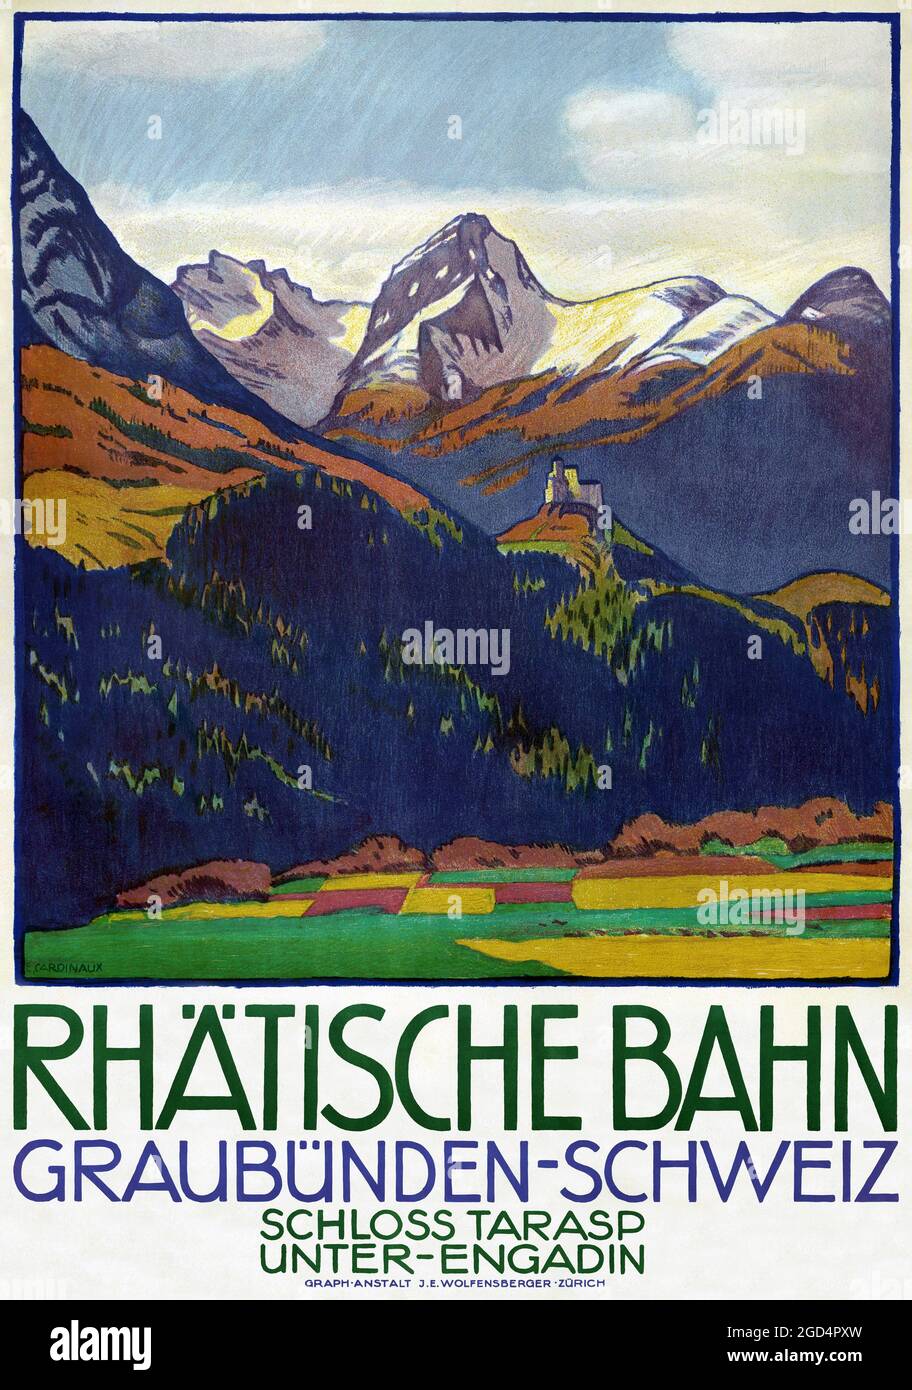 Rhätische Bahn. Graubünden, Schweiz by Emil Cardinaux (1877-1936). Restored vintage poster published in 1913 in Switzerland. Stock Photo